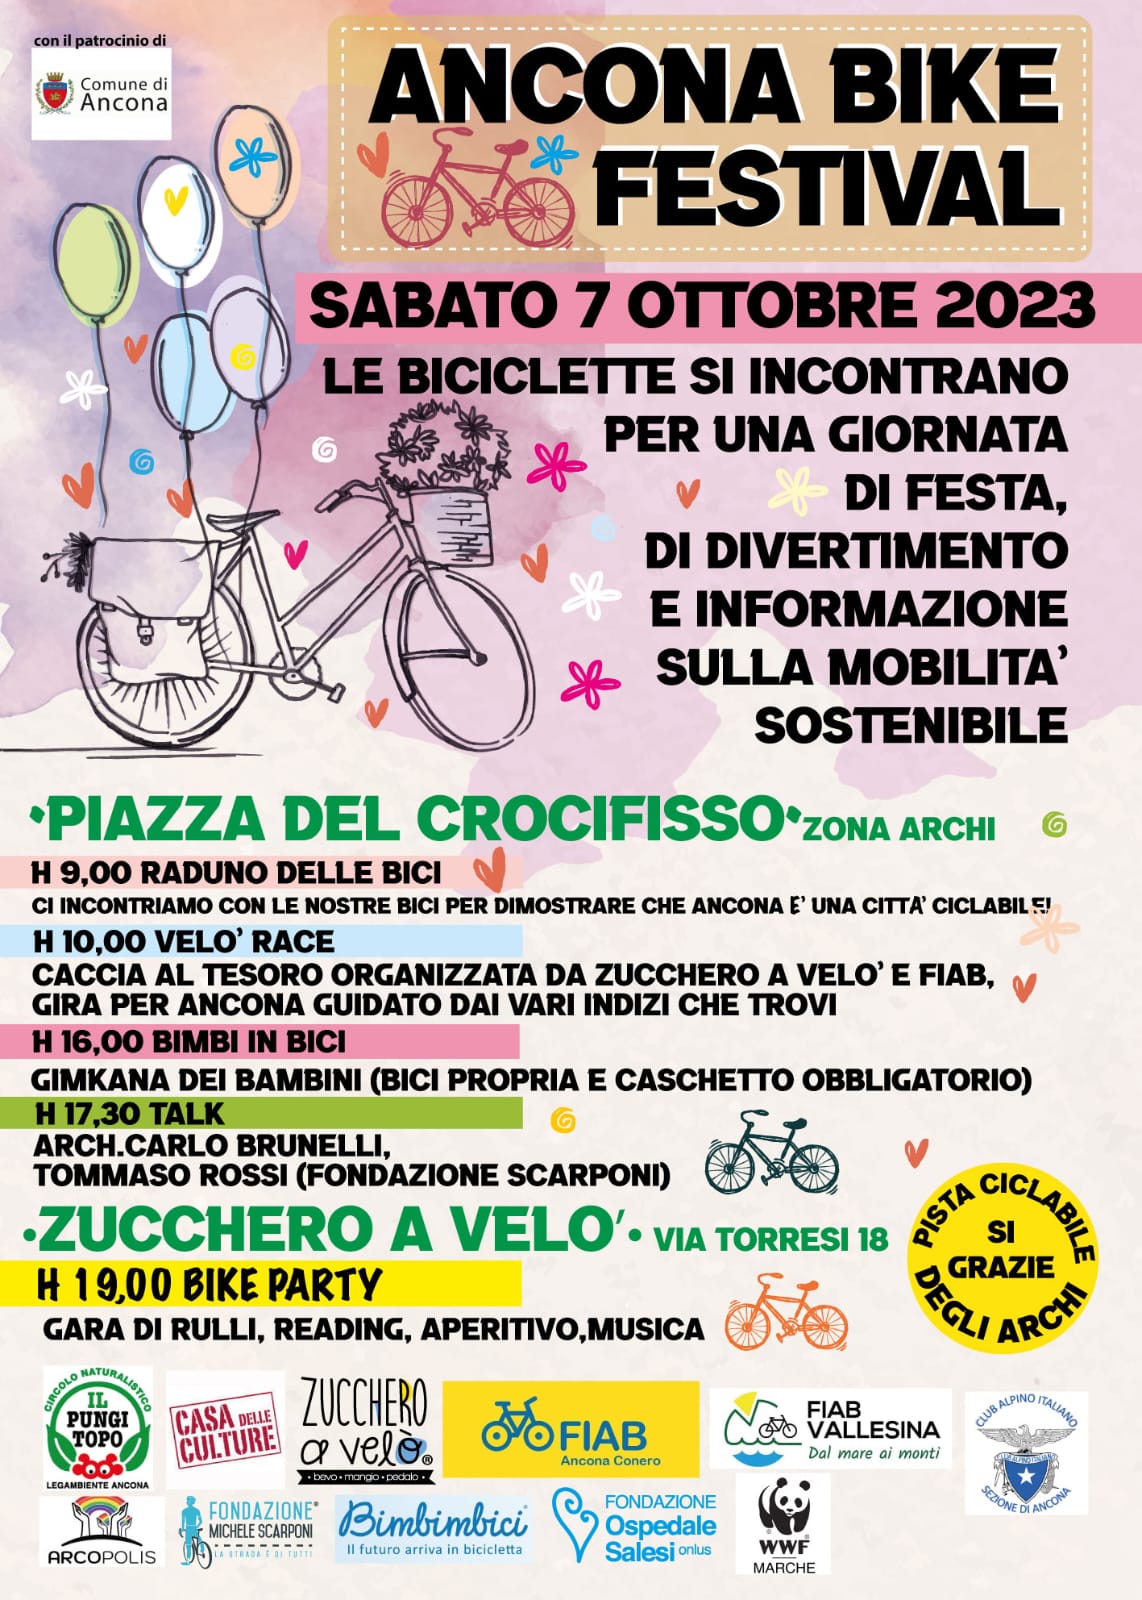 Ancona Bike Festival 7 ottobre 2023